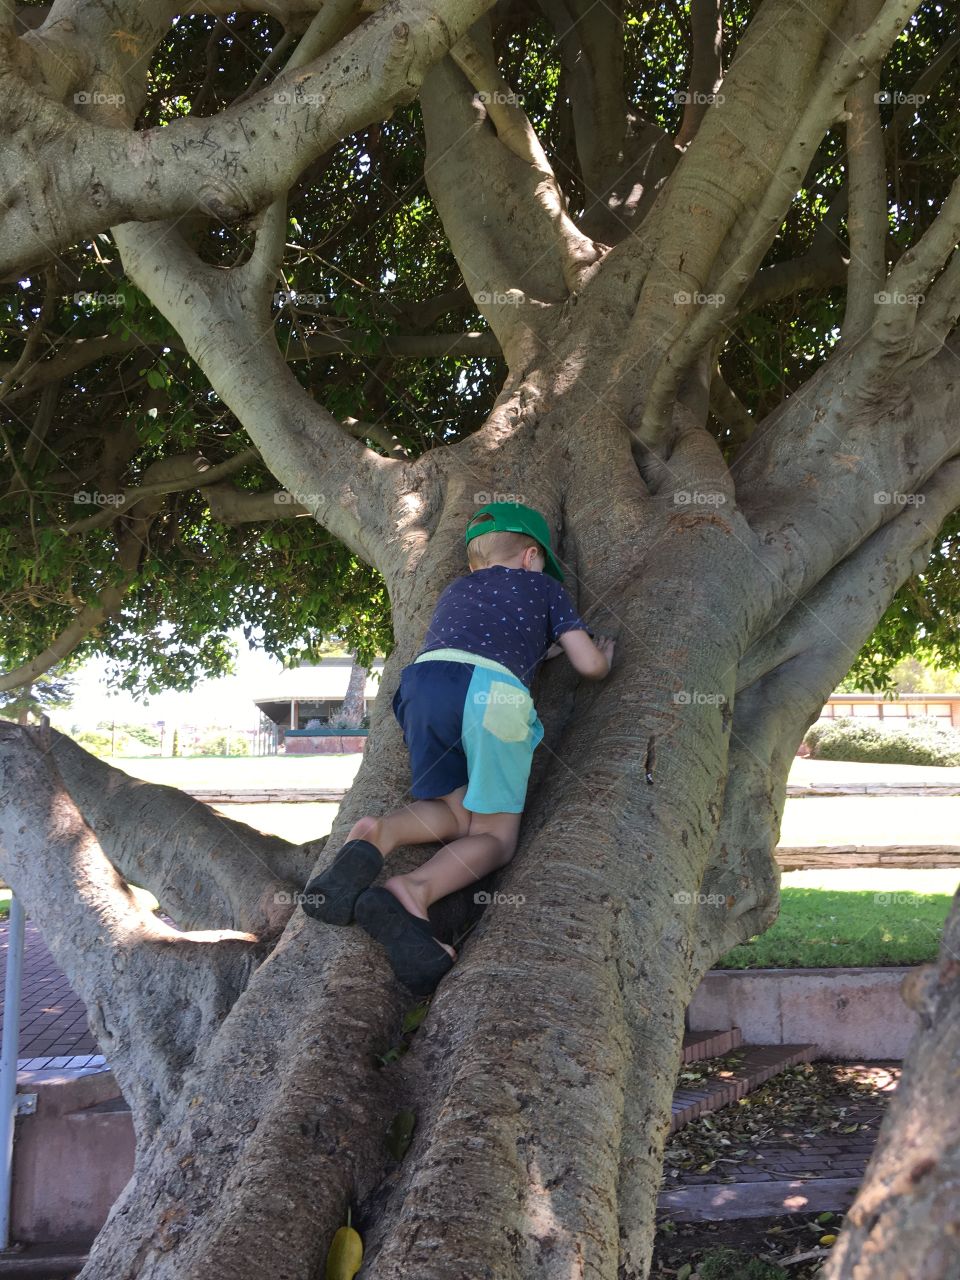 Child (boy) climbing tree